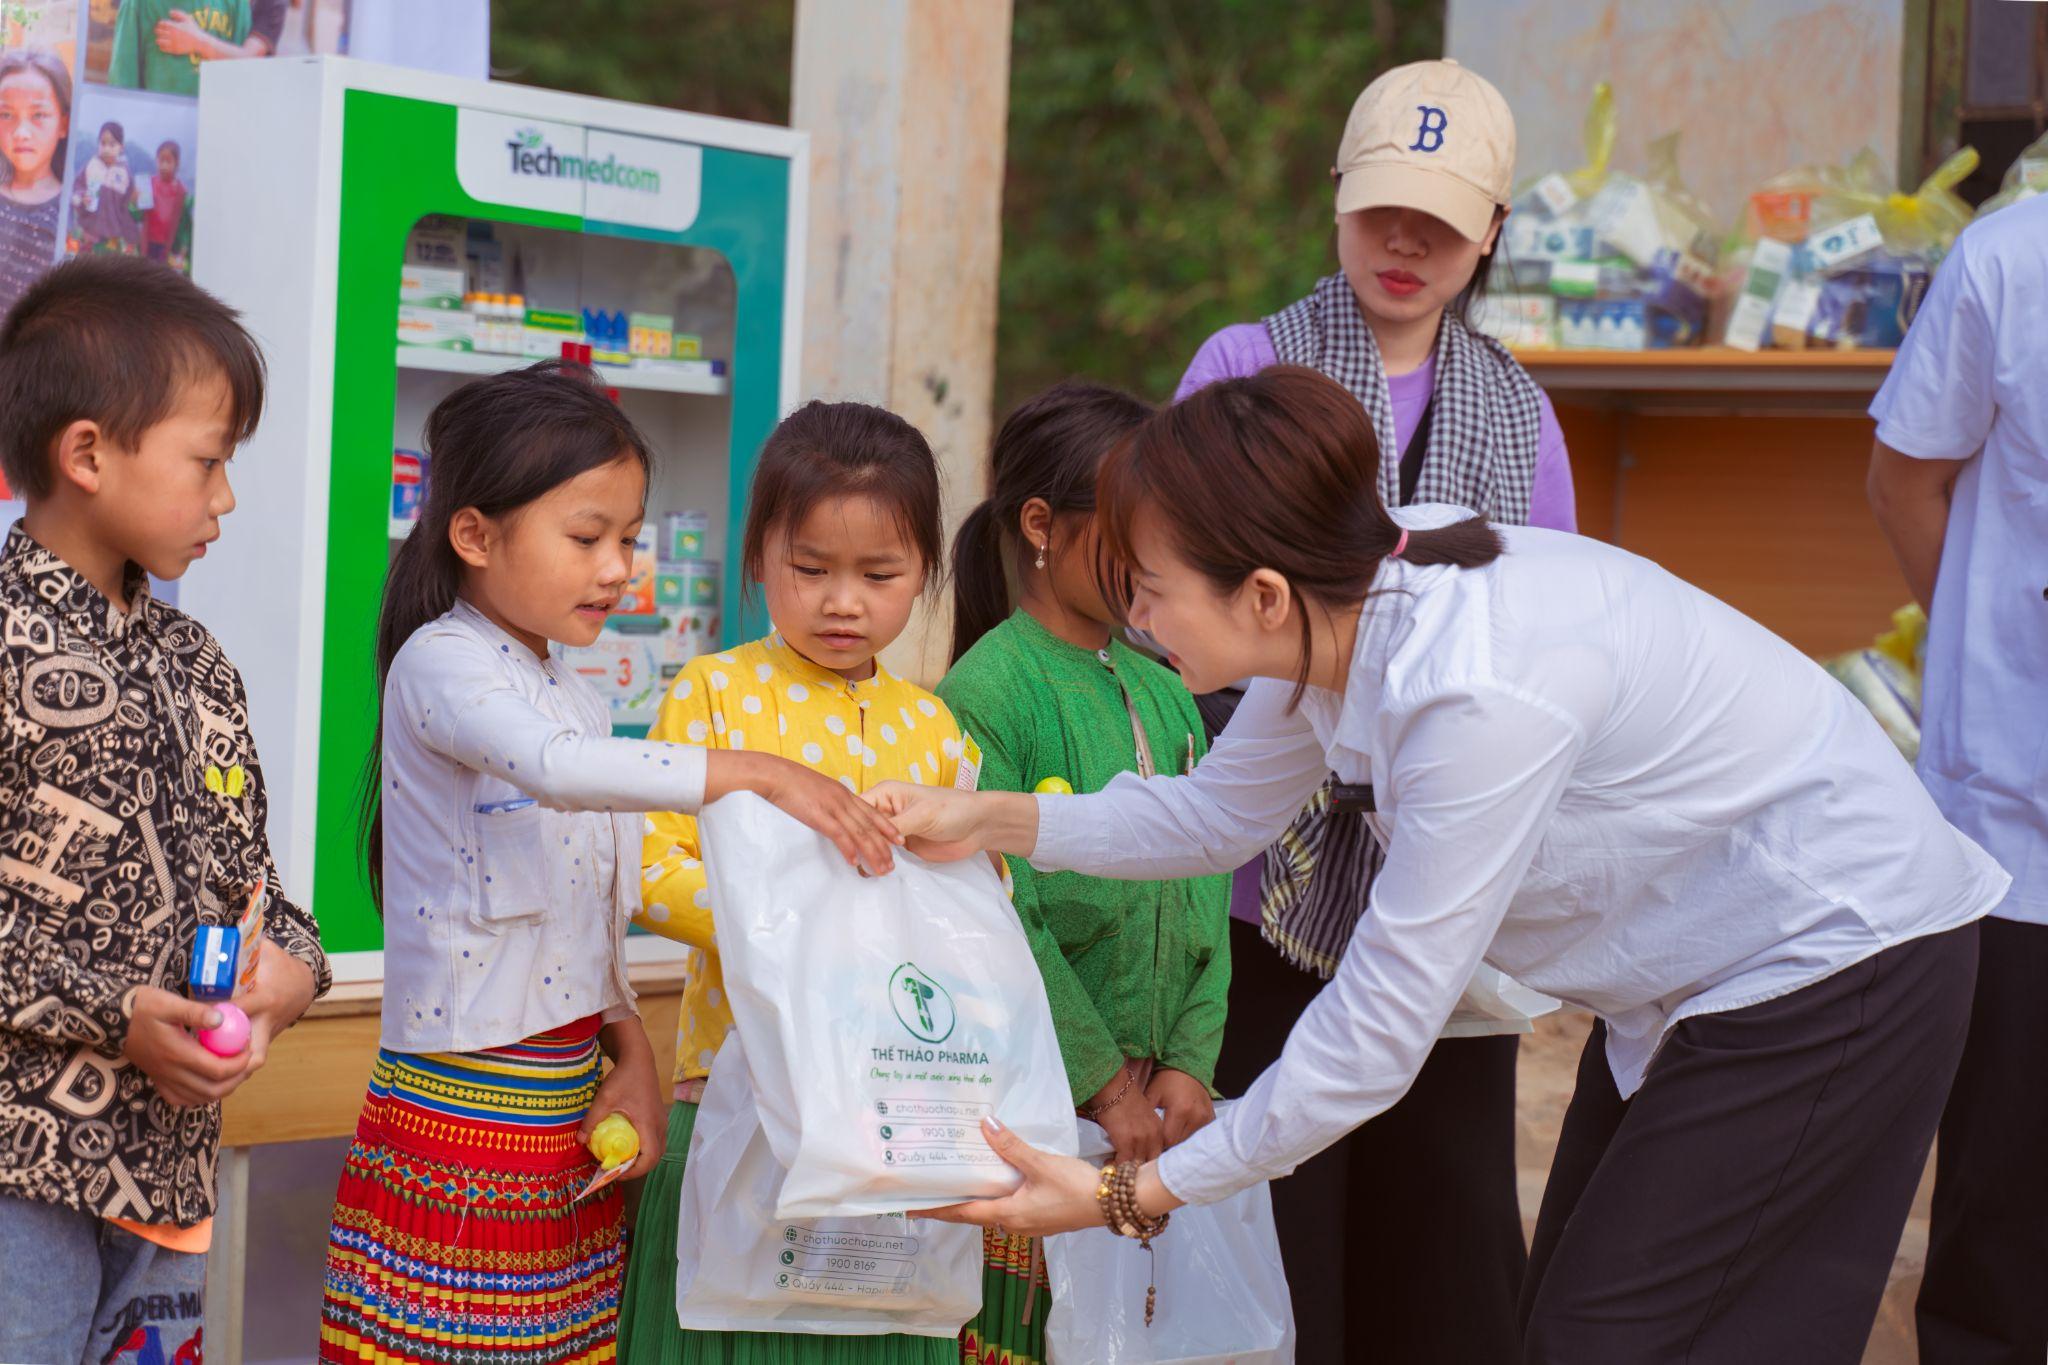 Ra mắt Dự án Tủ thuốc cho em, chương trình thiện nguyện trao tặng 1000 tủ thuốc trên cả nước - 1